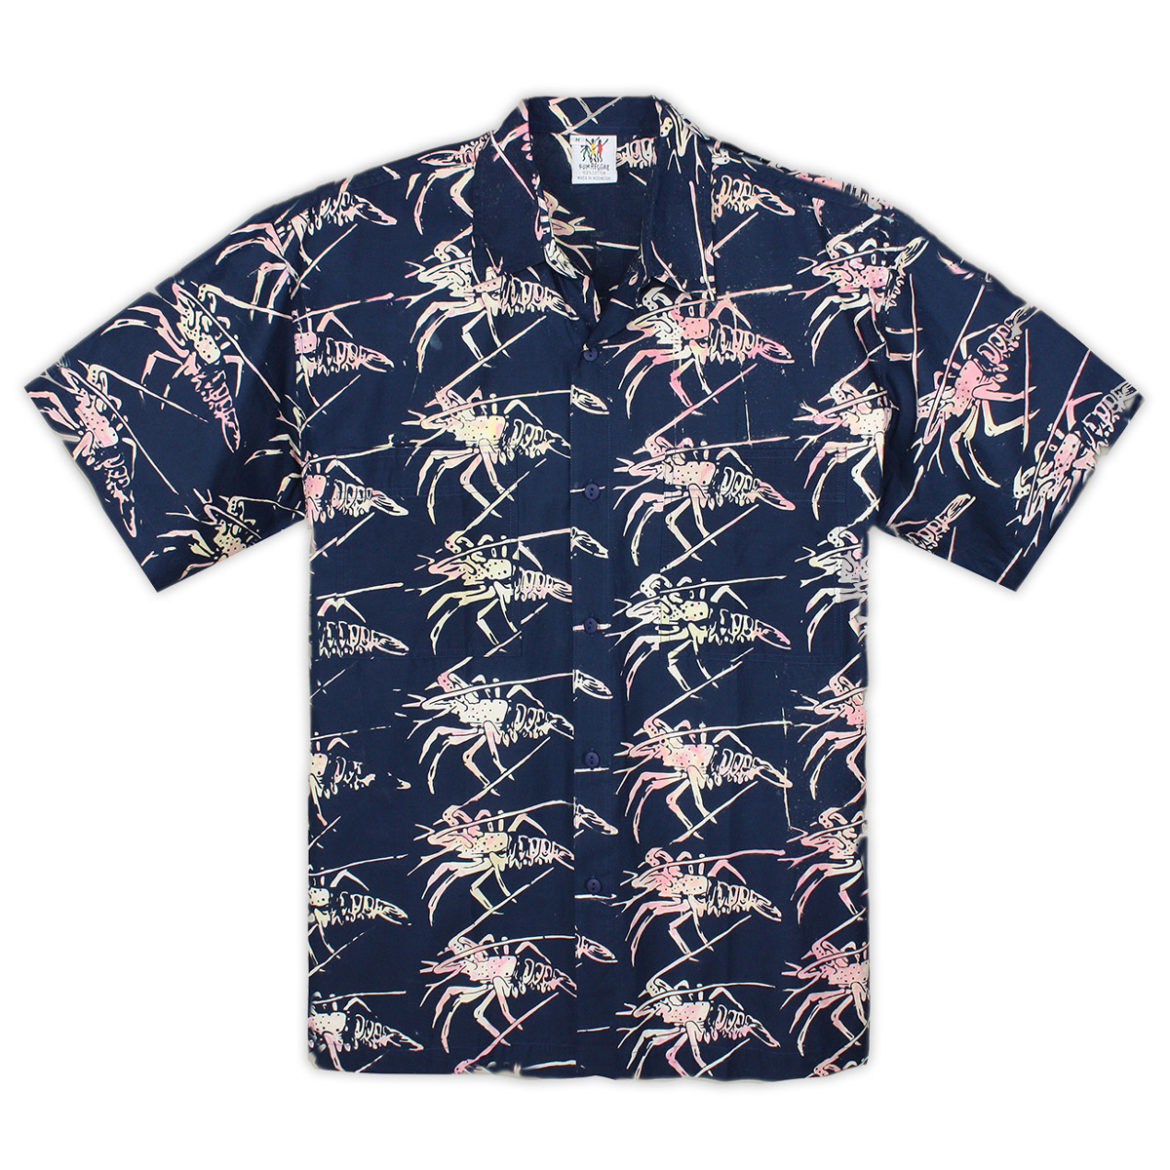 Rum Reggae Hawaiian Shirt - Lobster Fest - Navy Blue